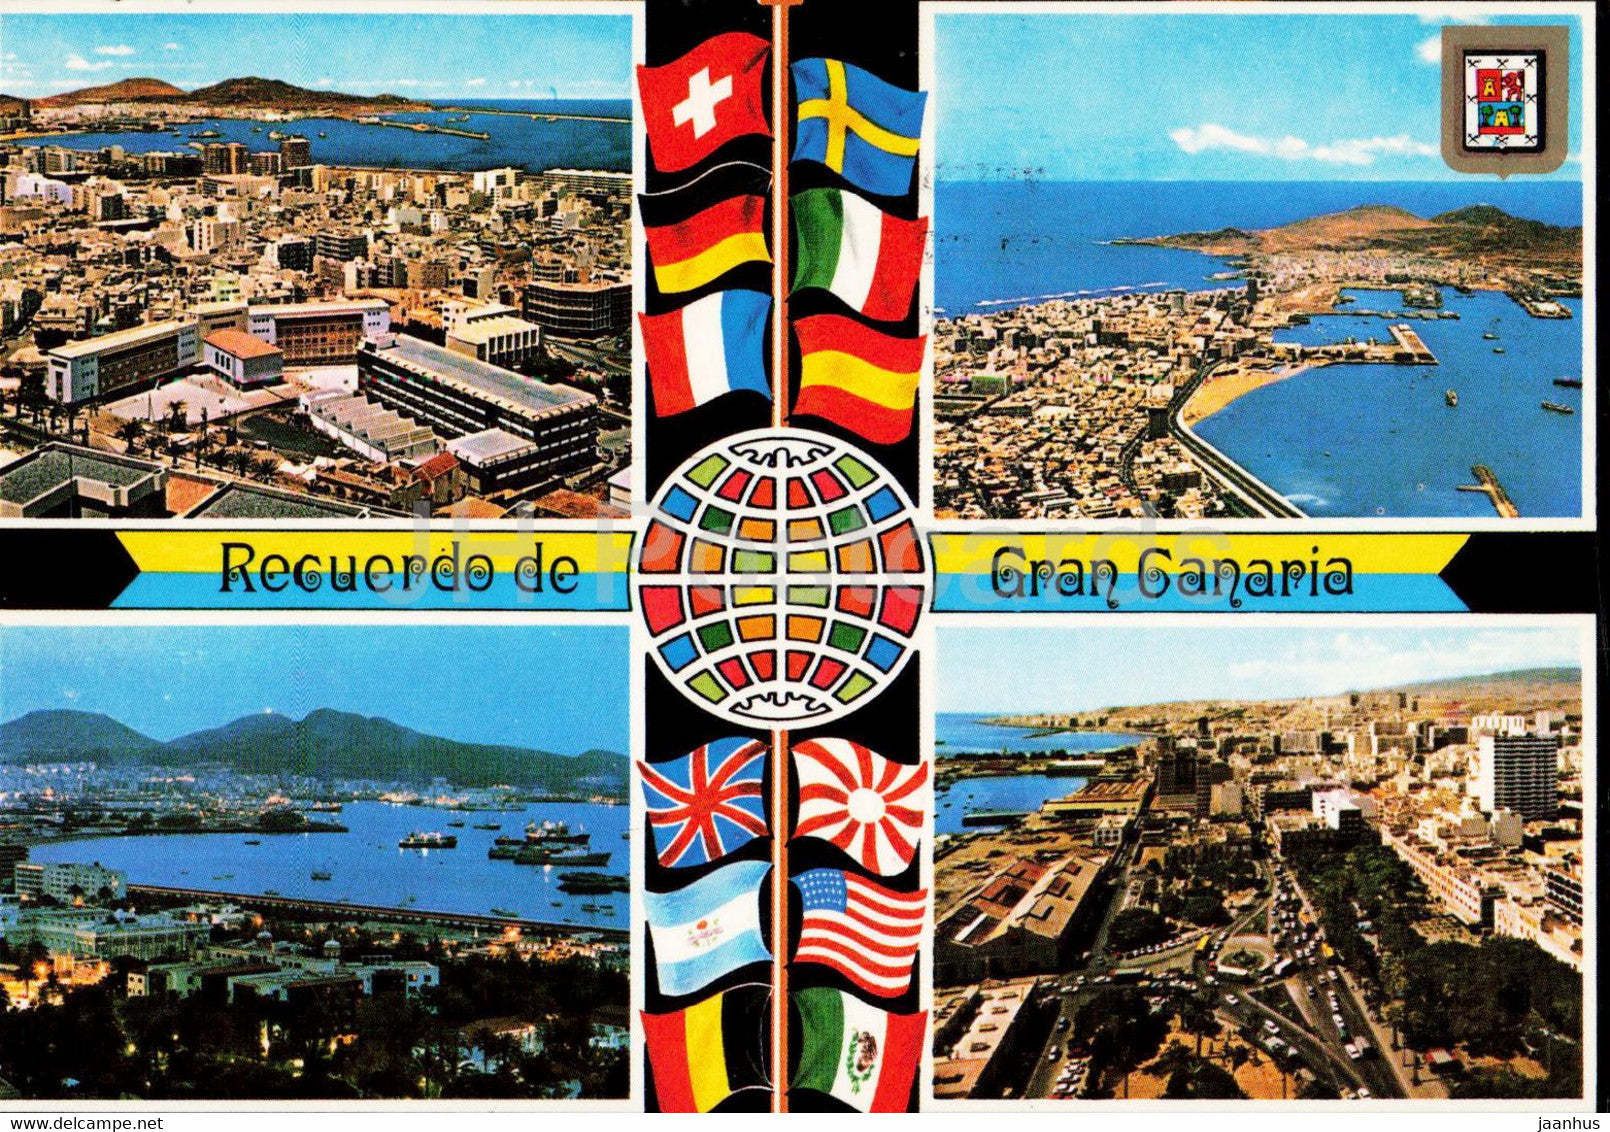 Recuerdo de Gran Canaria - Diversos aspectos - multiview - 697 - Spain - used - JH Postcards